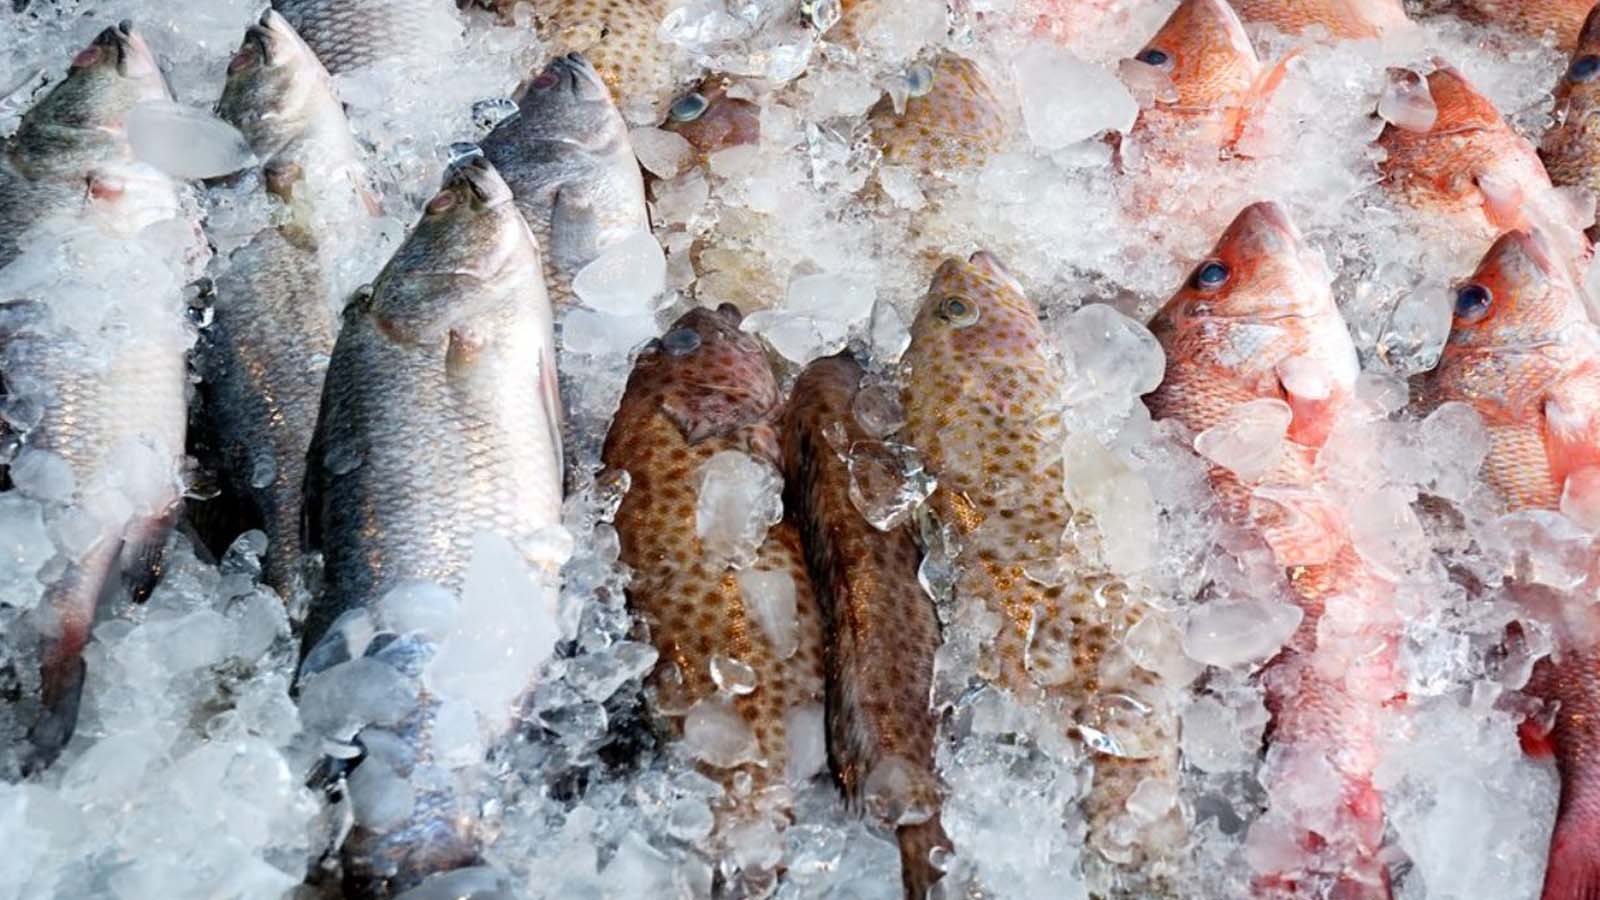 GLOBAL FISHERIES PVT LTD